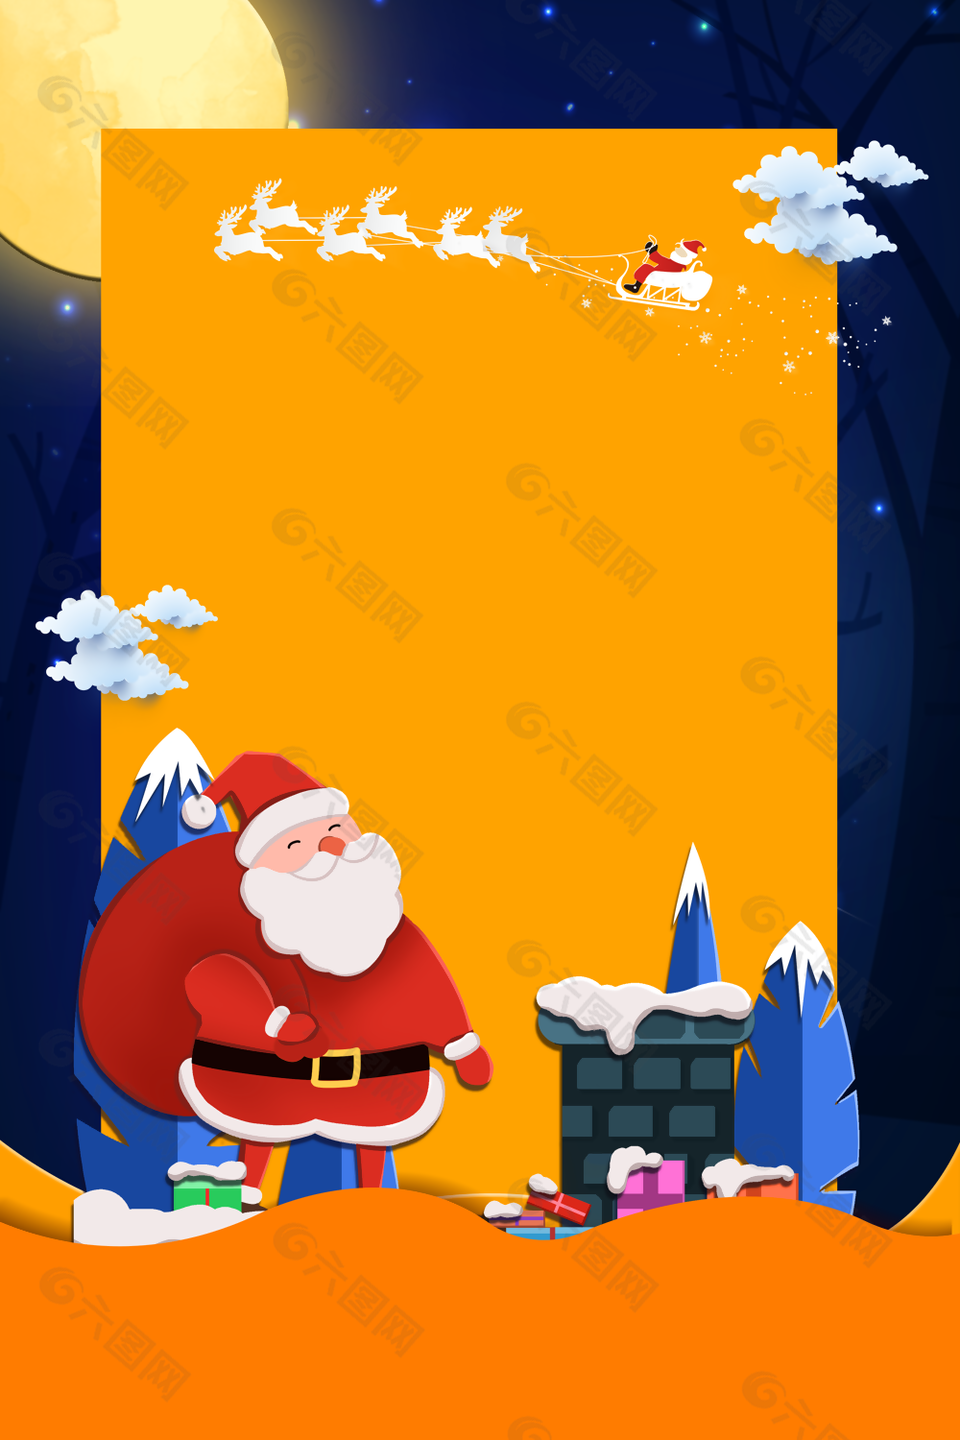 可爱扁平化卡通圣诞老人礼物背景图下载